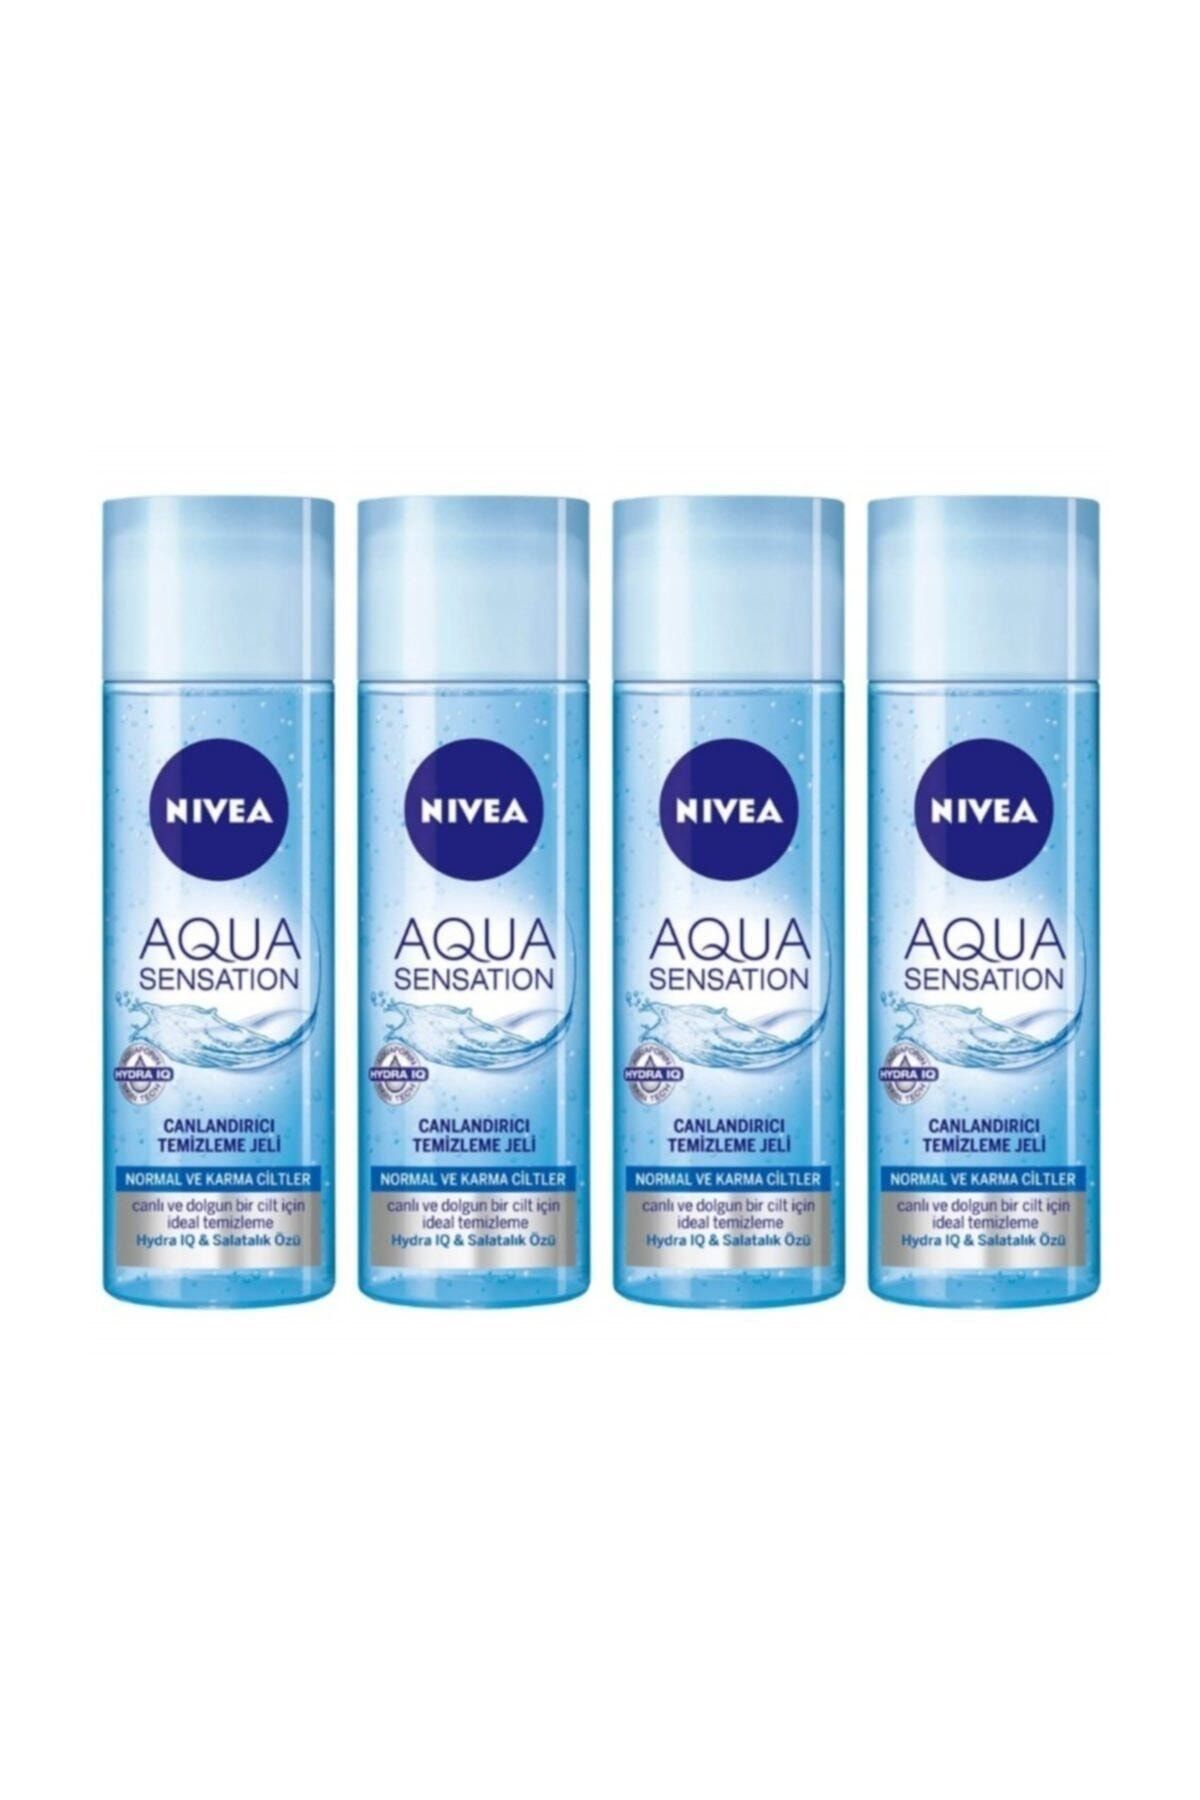 NIVEA Aqua Sensation Canlandırıcı Temizleme Jeli Normal Ve Karma Ciltler Için 200ml X 4 Lü Set